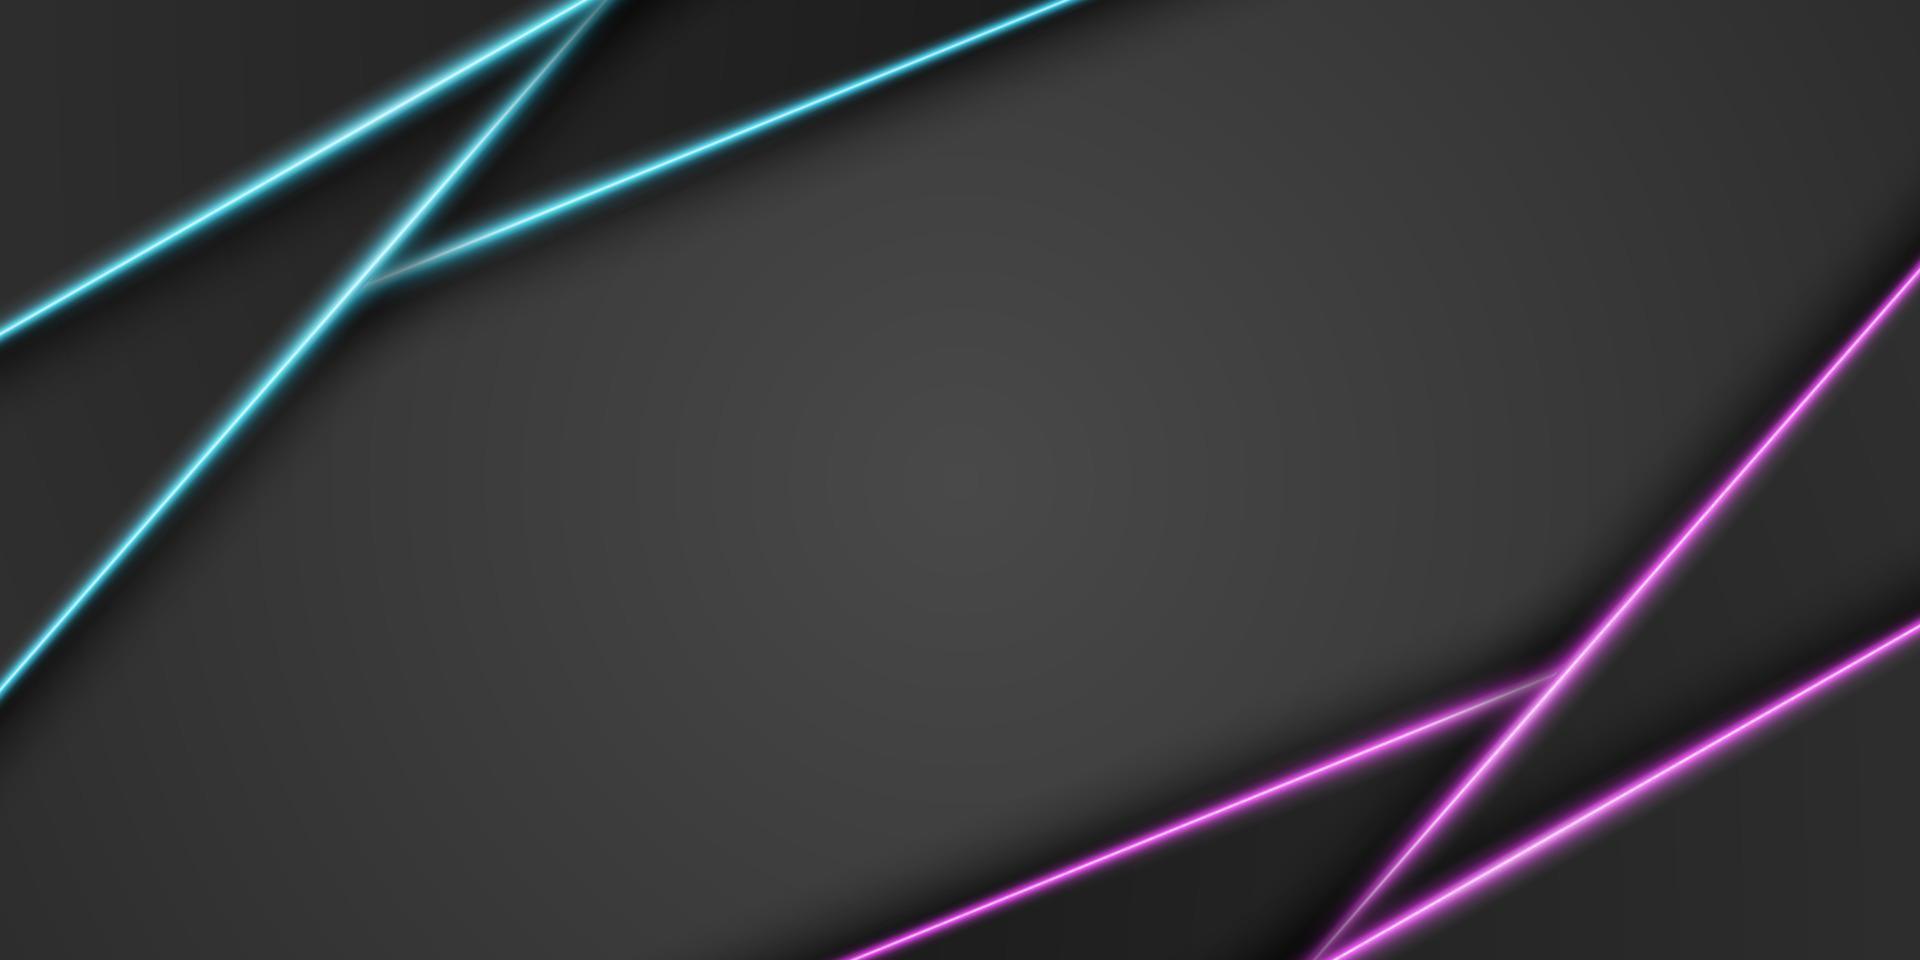 abstracte metalen zwarte frame achtergrond, driehoekige overlap laag met heldere neon blauwe en paarse lichtlijn, diagonale vorm, donkere minimaal ontwerp met kopie ruimte, vectorillustratie vector